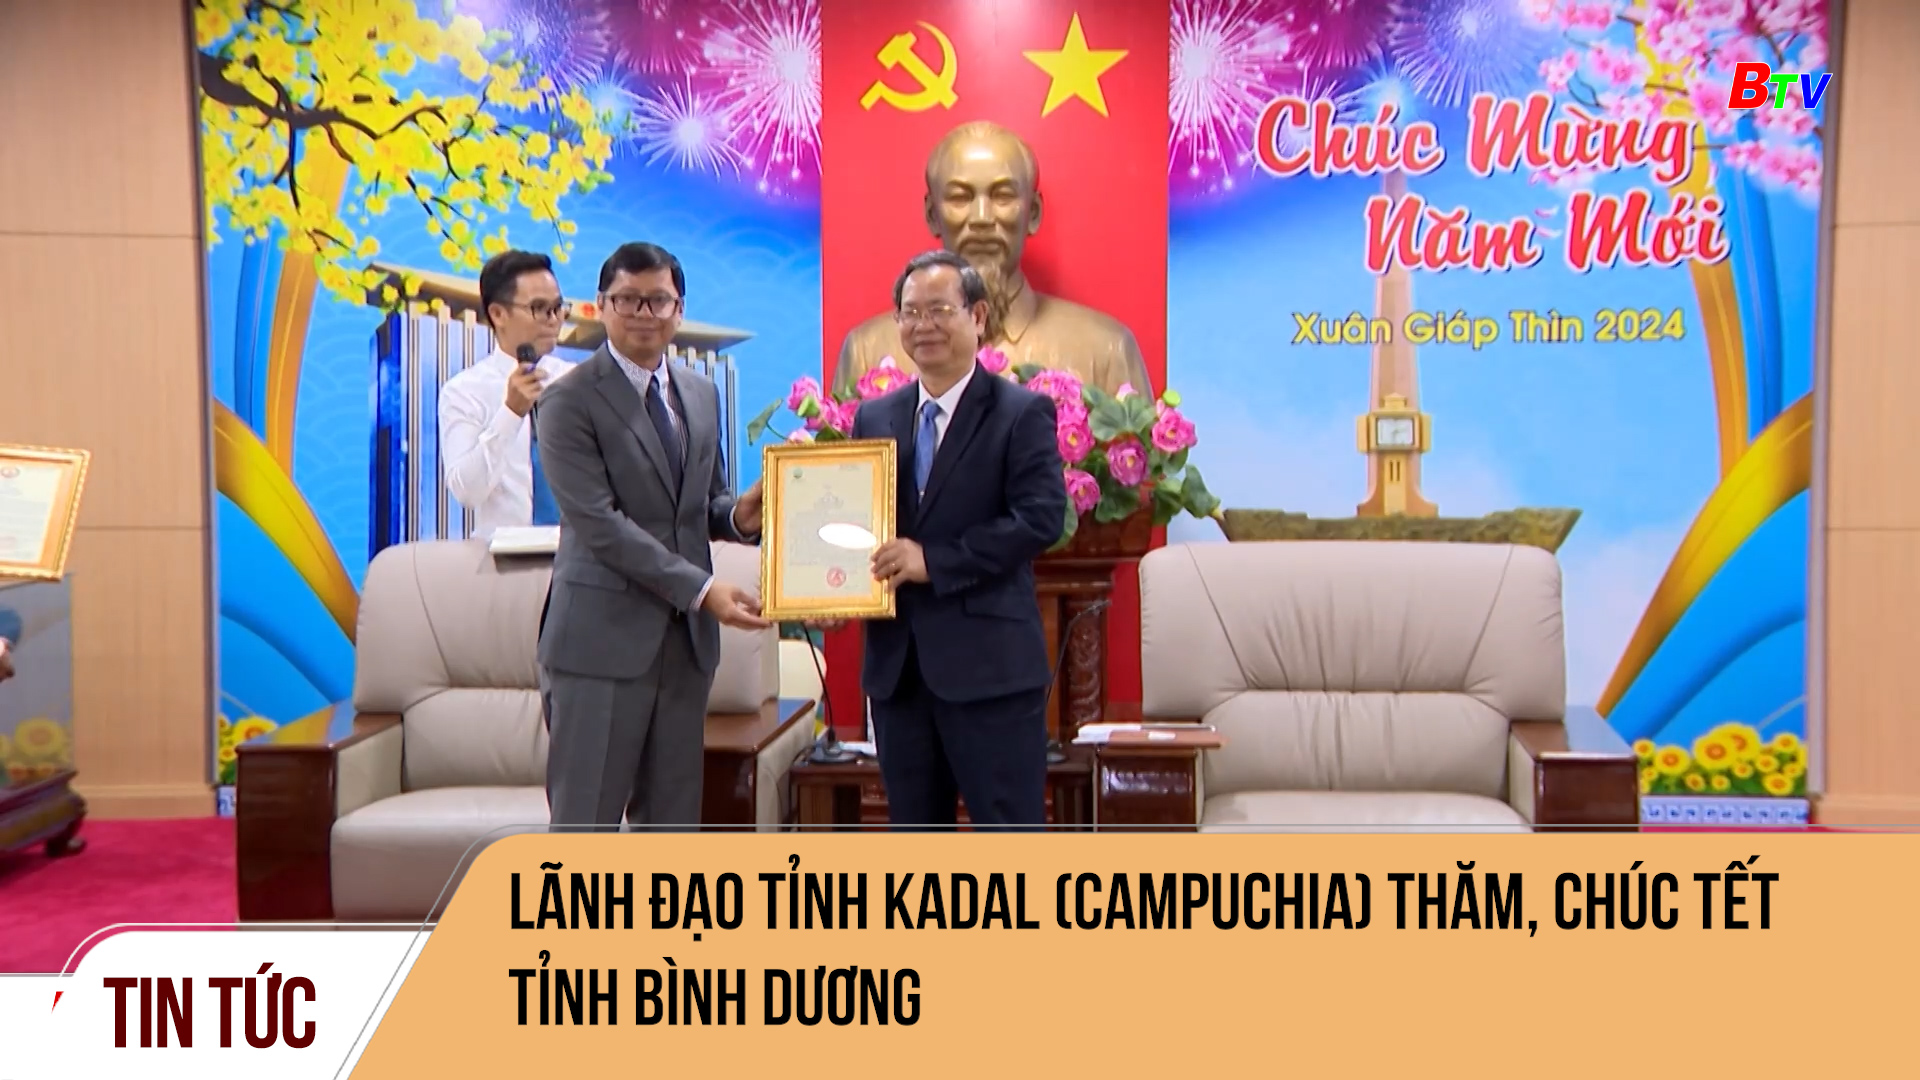 Lãnh đạo tỉnh Kadal (Campuchia) thăm, chúc tết tỉnh Bình Dương